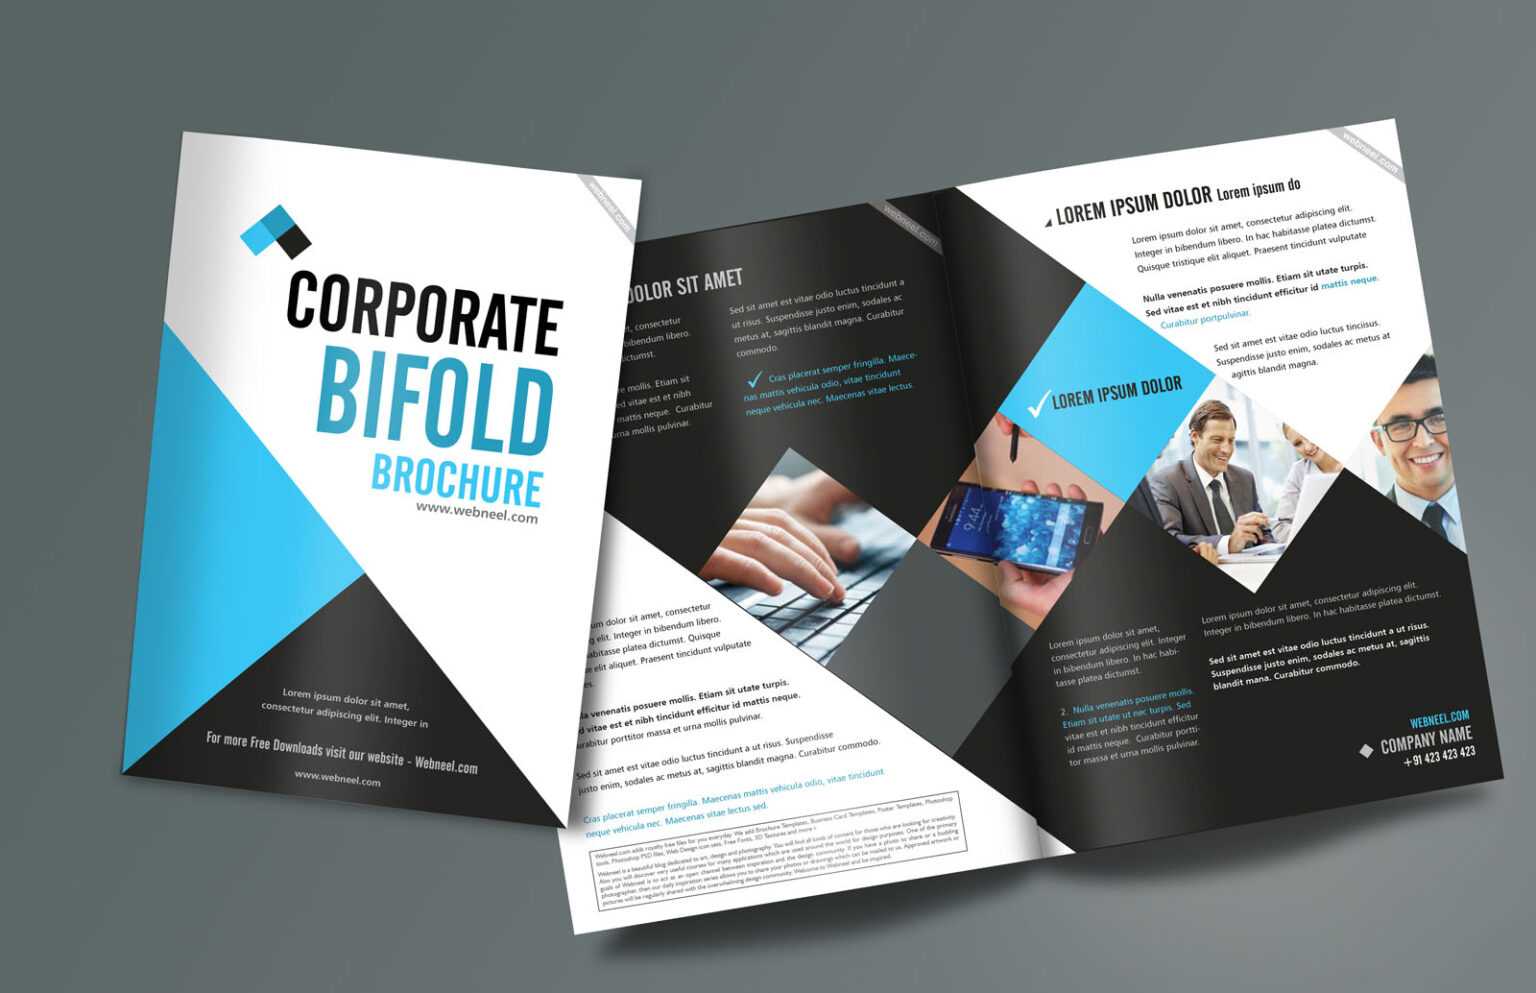 corporate-bifold-brochure-design-templates-freedownload-with-regard